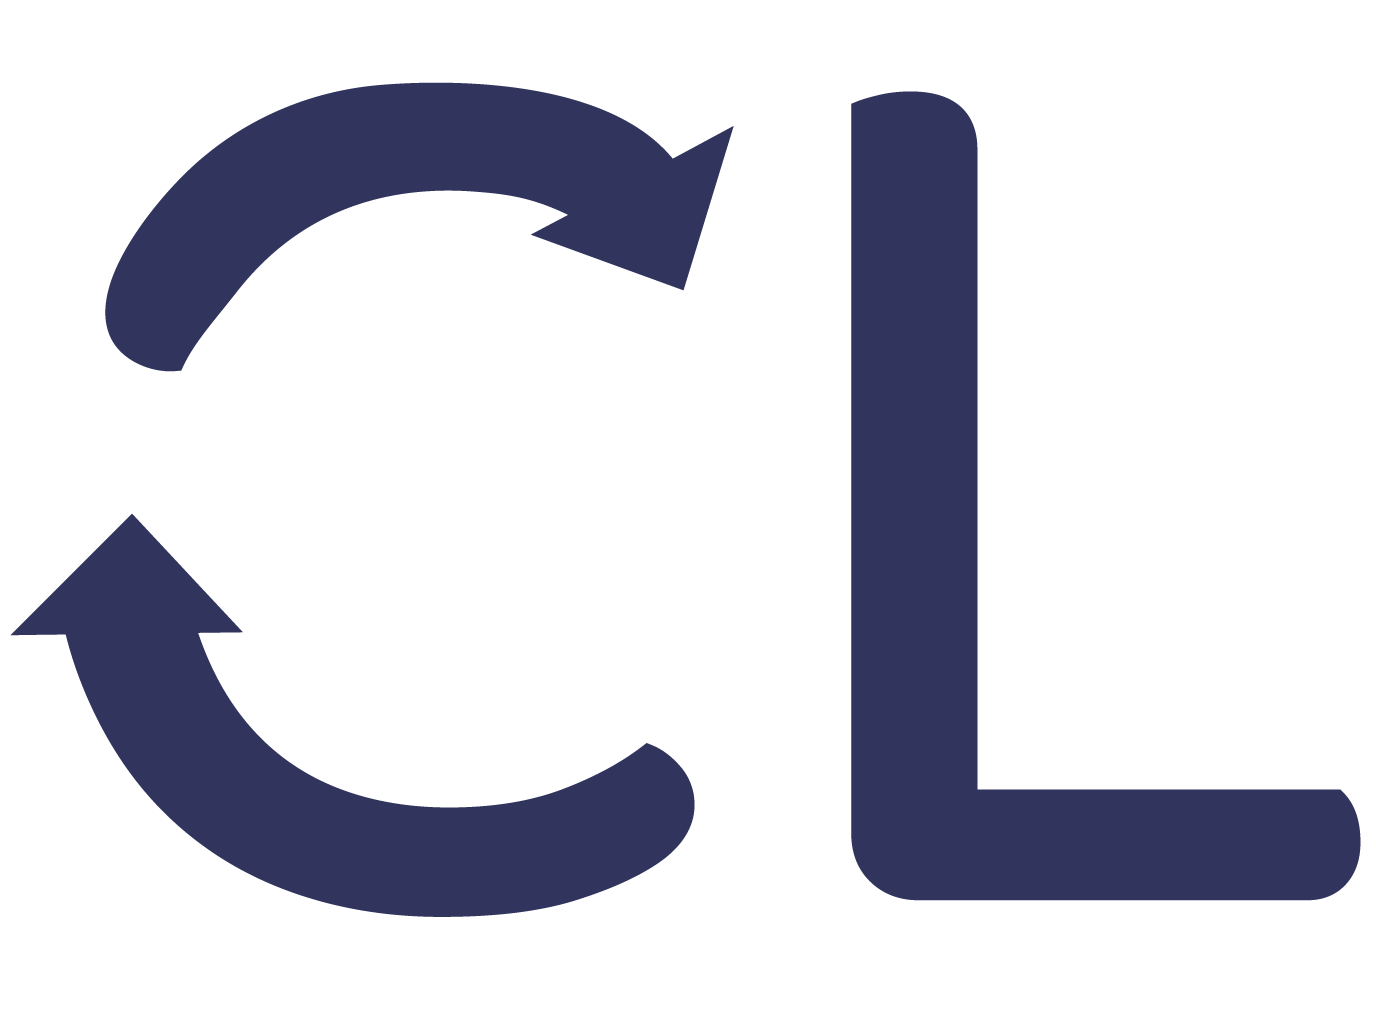 Changelab_organisationberatung_logo_nur_bildmarke